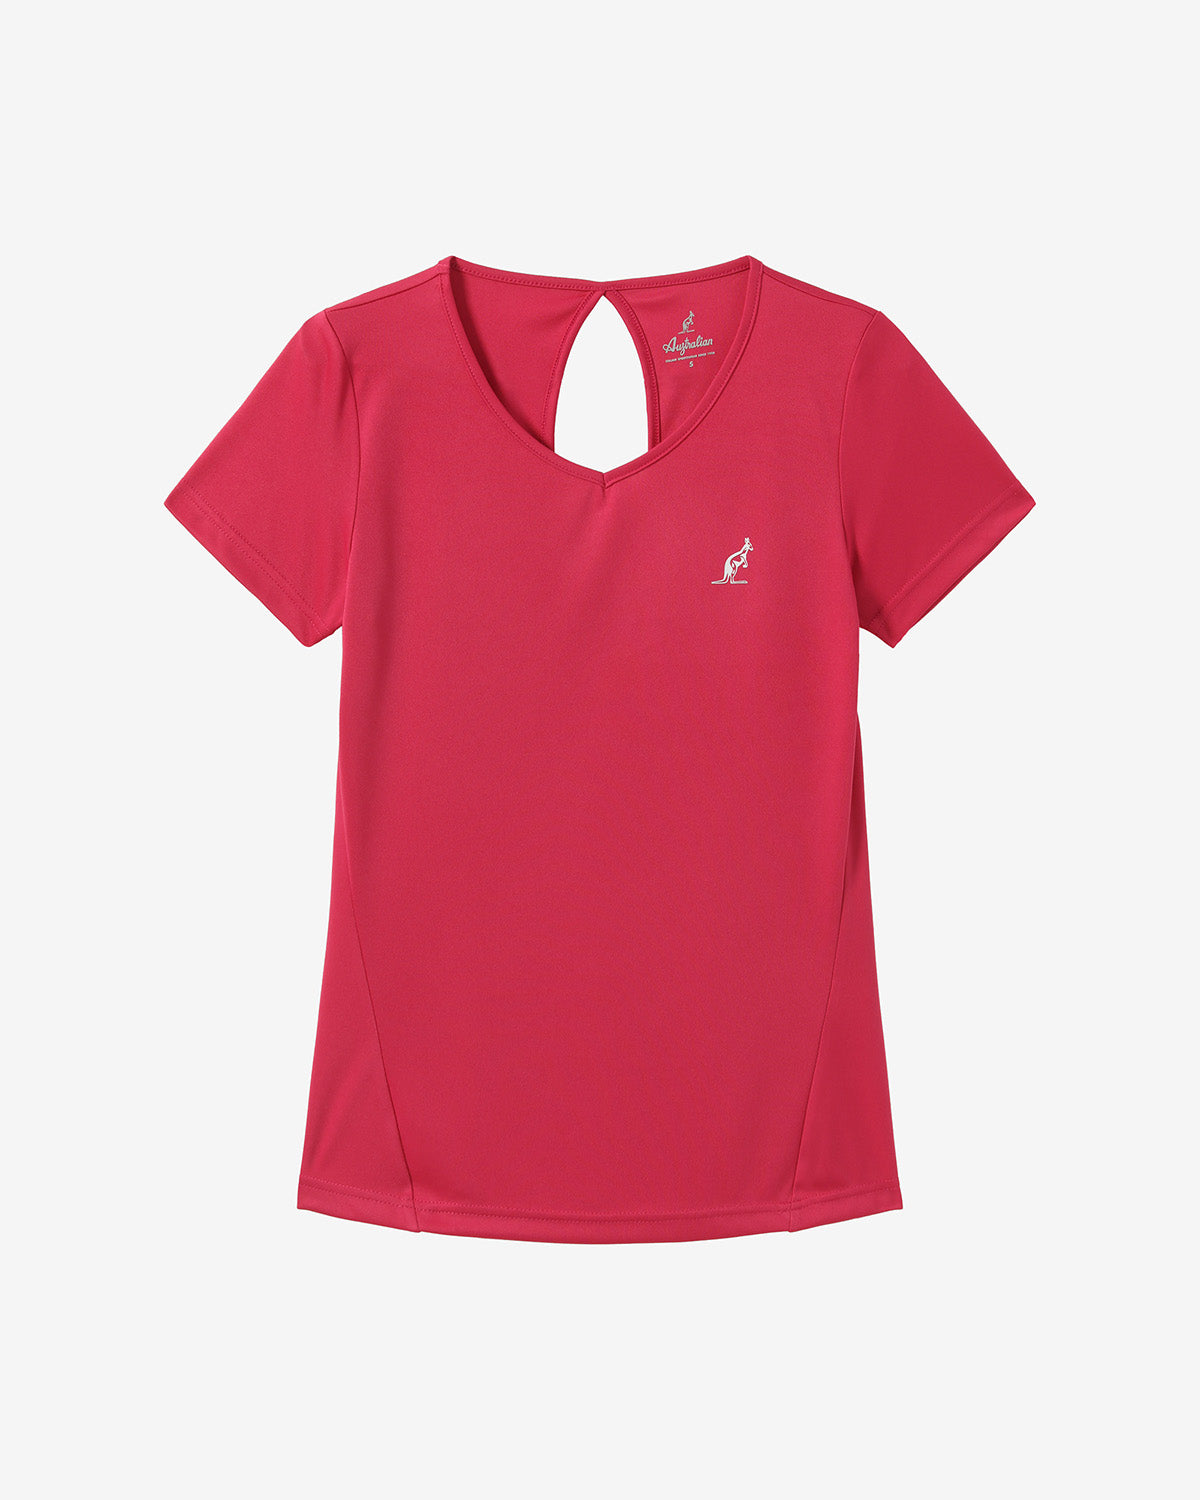 Drop T-Shirt: Australian Tennis